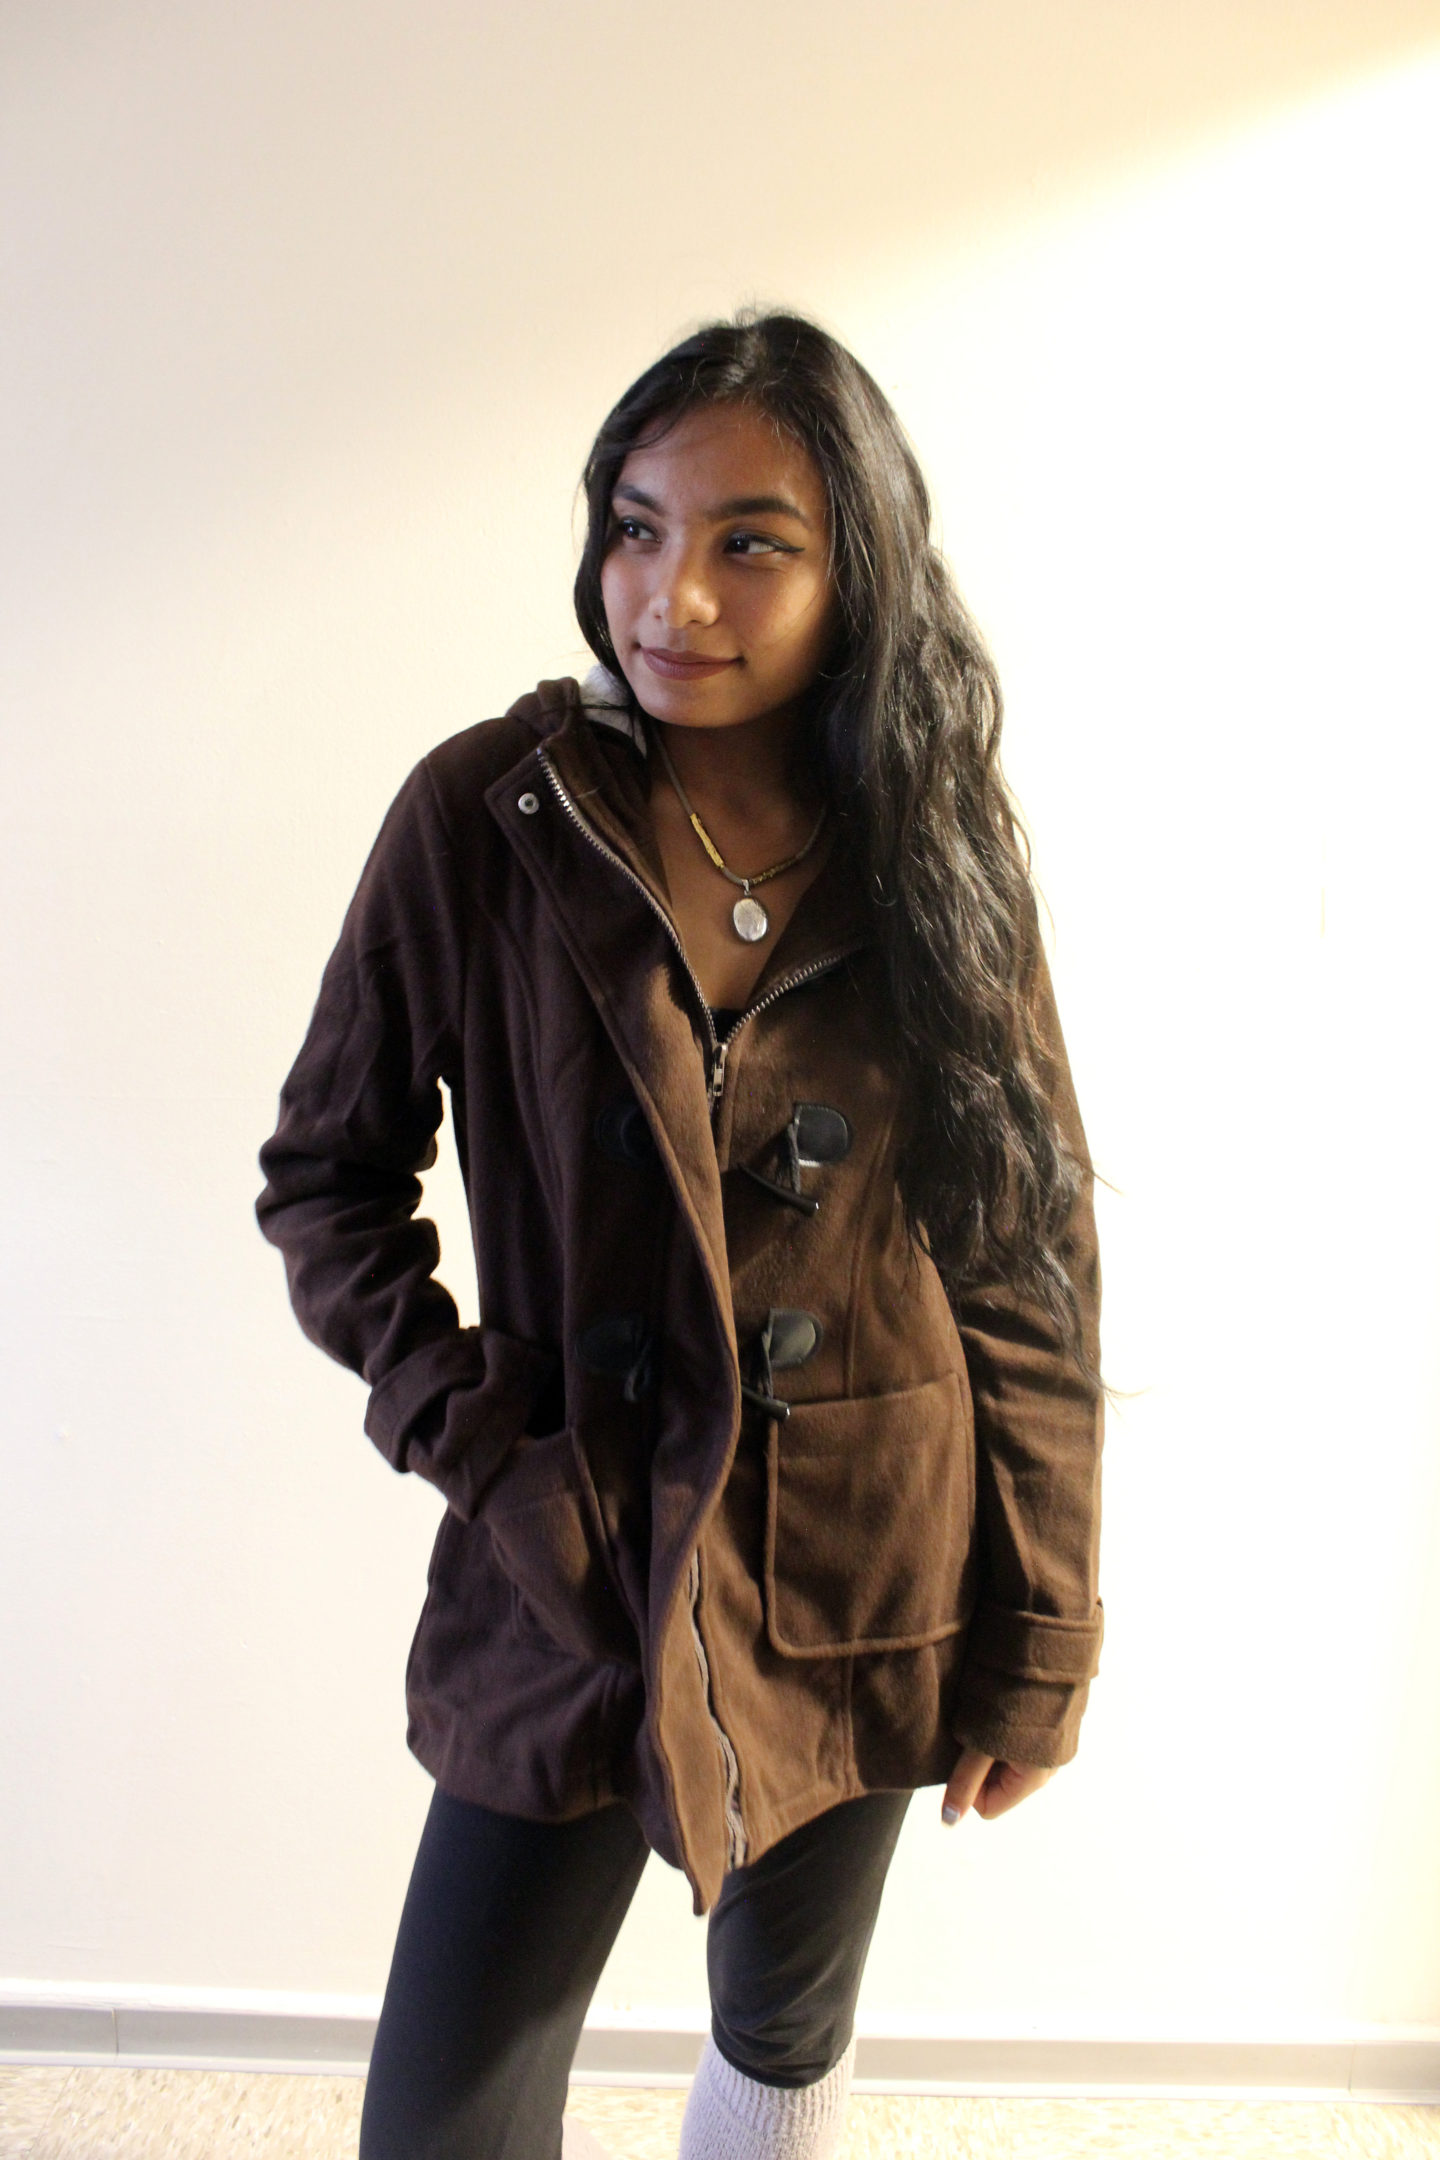 Brown-Jacket-Gamiss-Style-Blogger-LINDATENCHITRAN-1-1616x1080